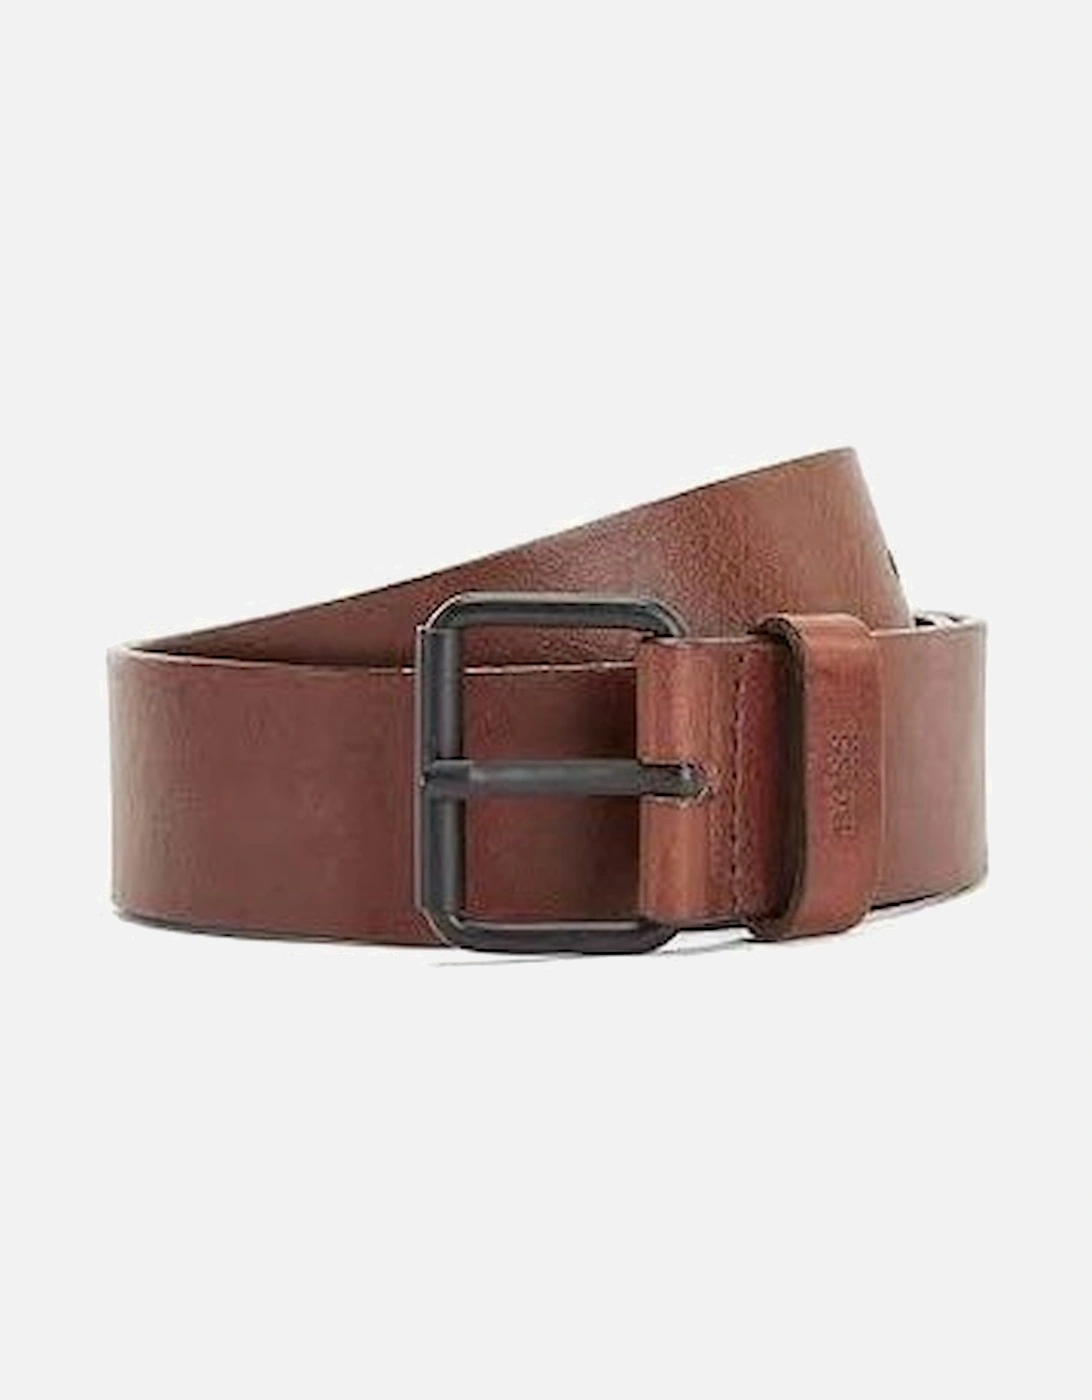 Serge-V Brown Leather Belt, 4 of 3